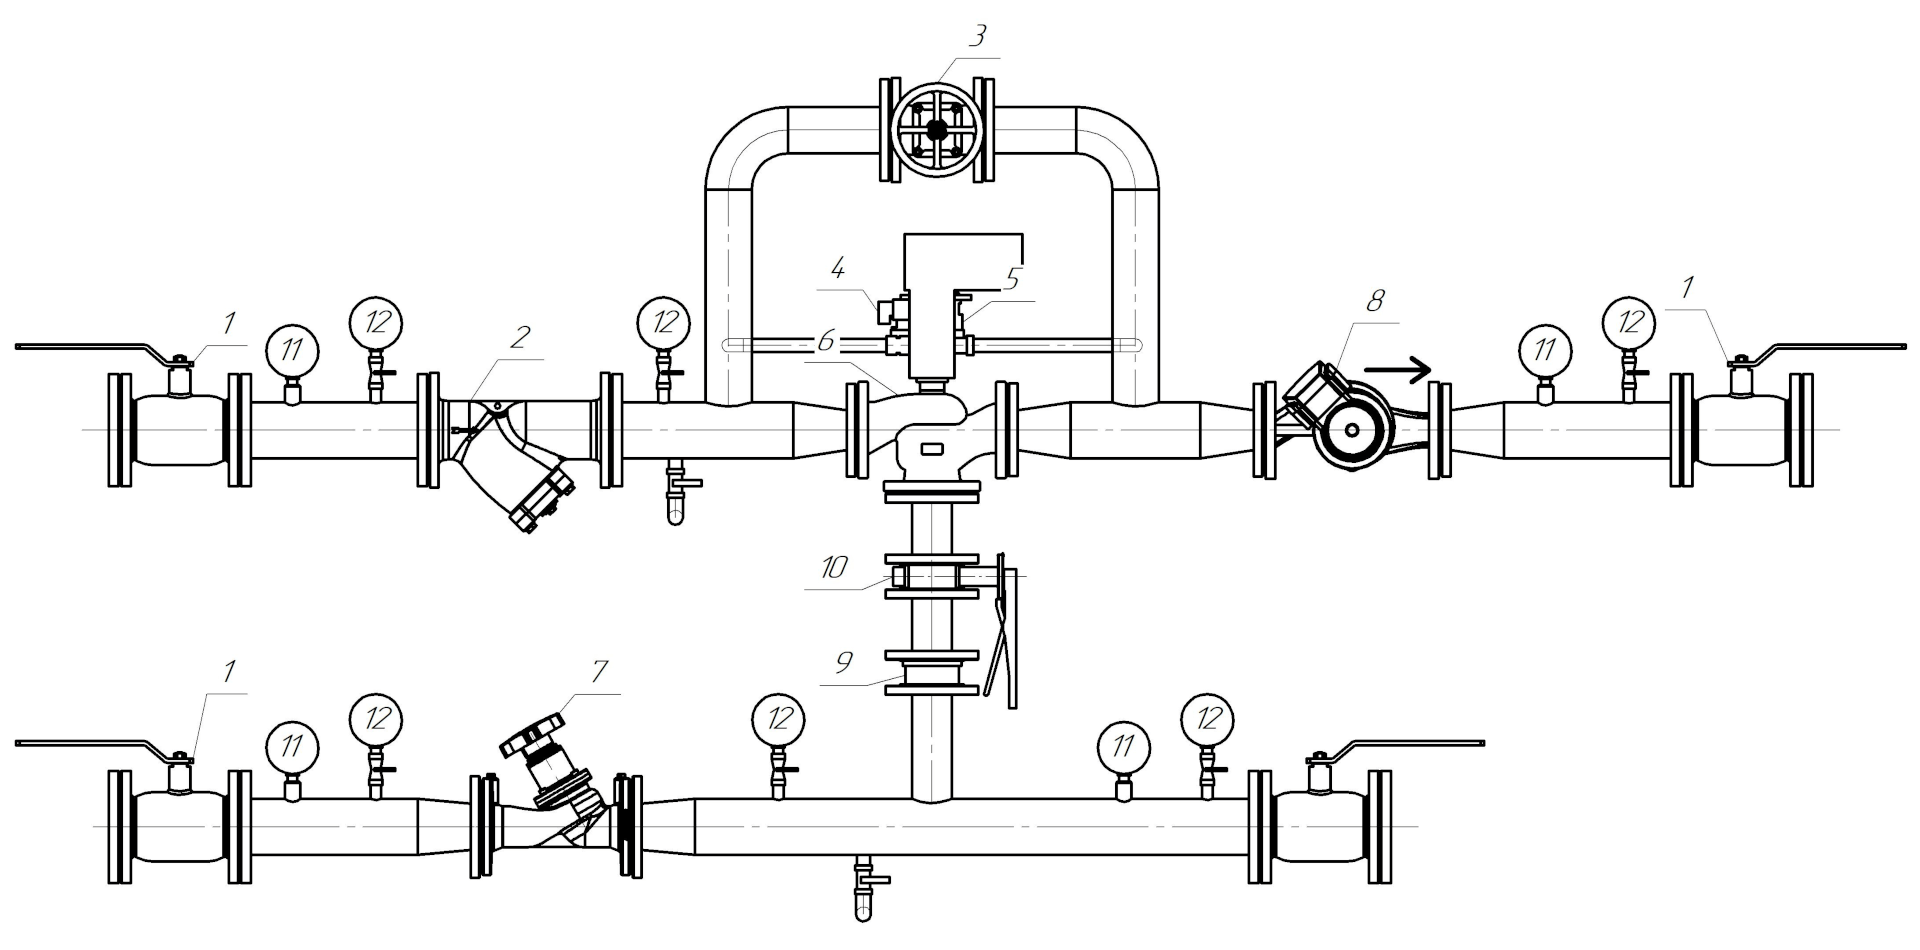 Схема смесительного узла